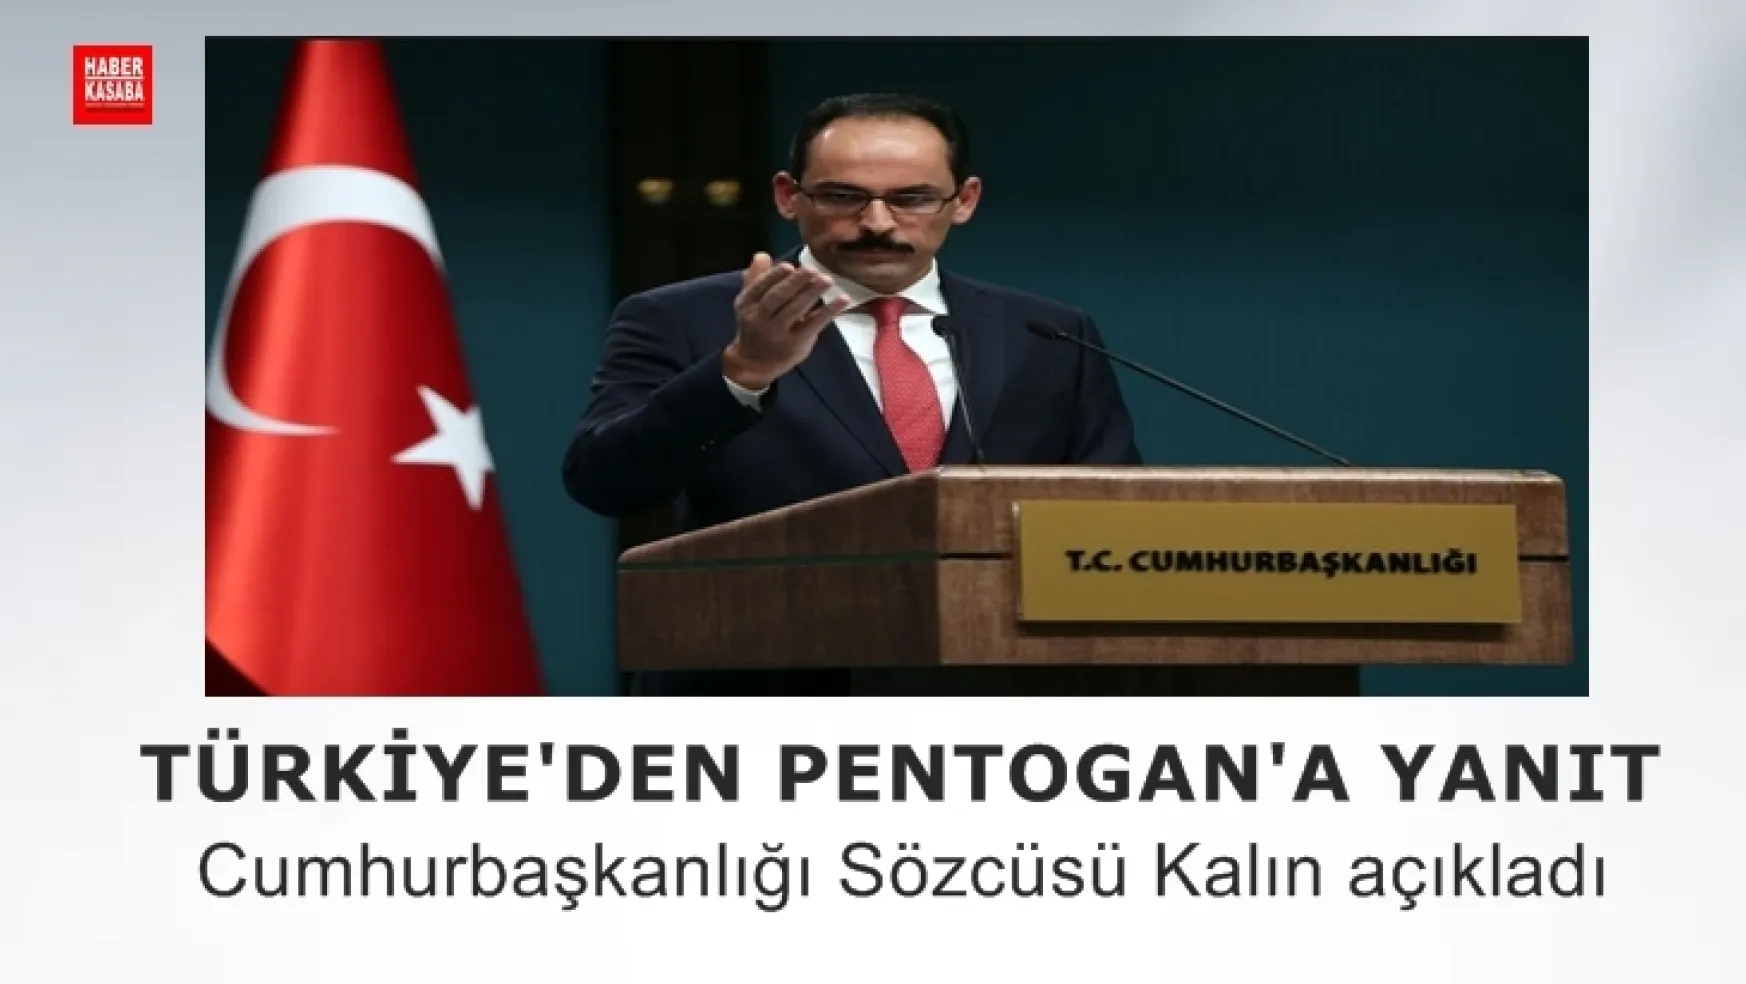 Cumhurbaşkanlığı Sözcüsü Kalın, 'Türkiye Kendisi Karar verir